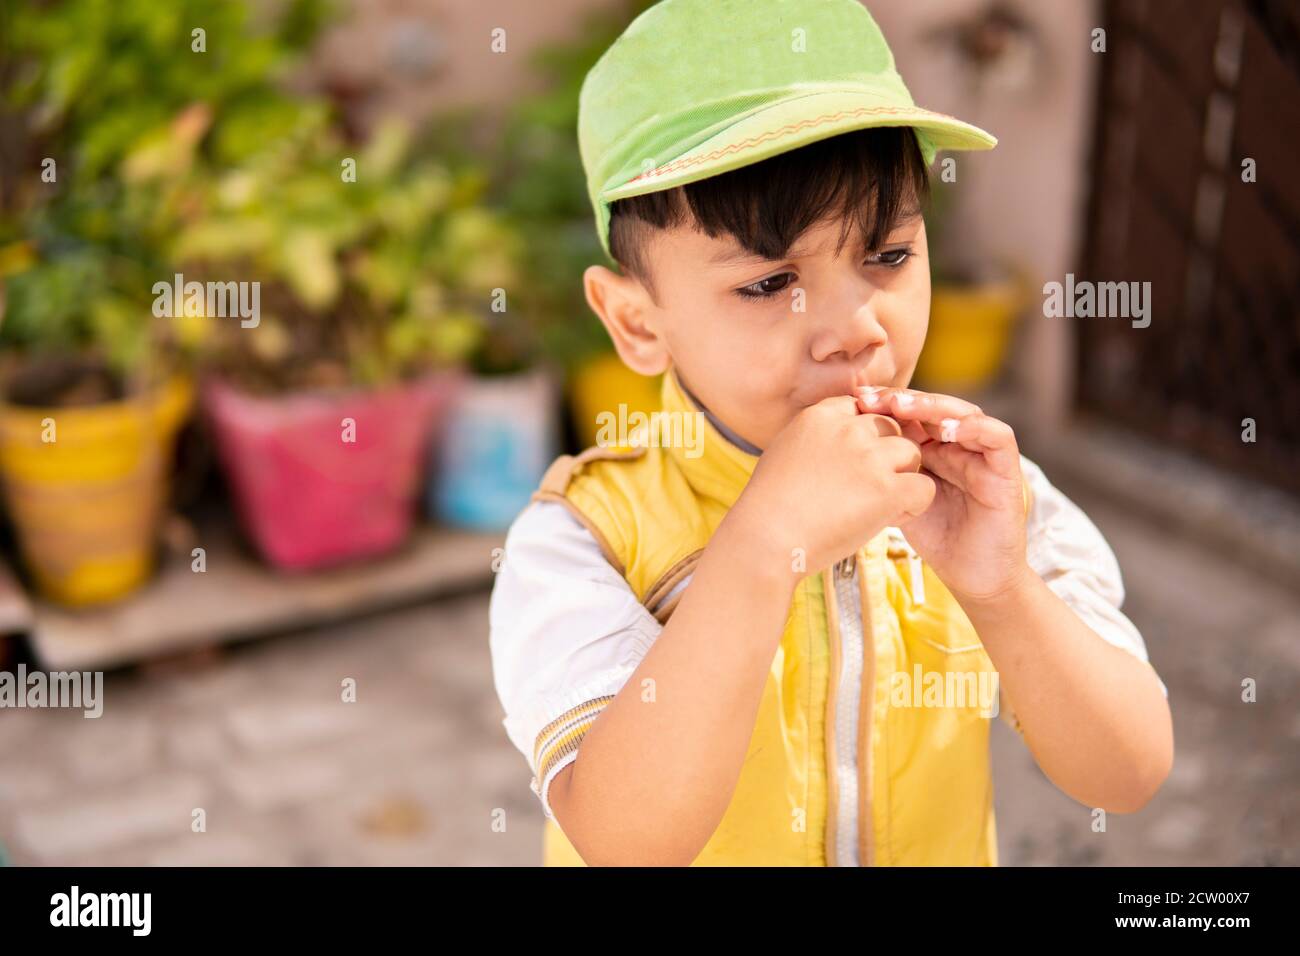 Schneiden Sie kleinen Jungen essen Lollipop Süßigkeiten und Spaß im Freien zu Tageszeiten. Stockfoto